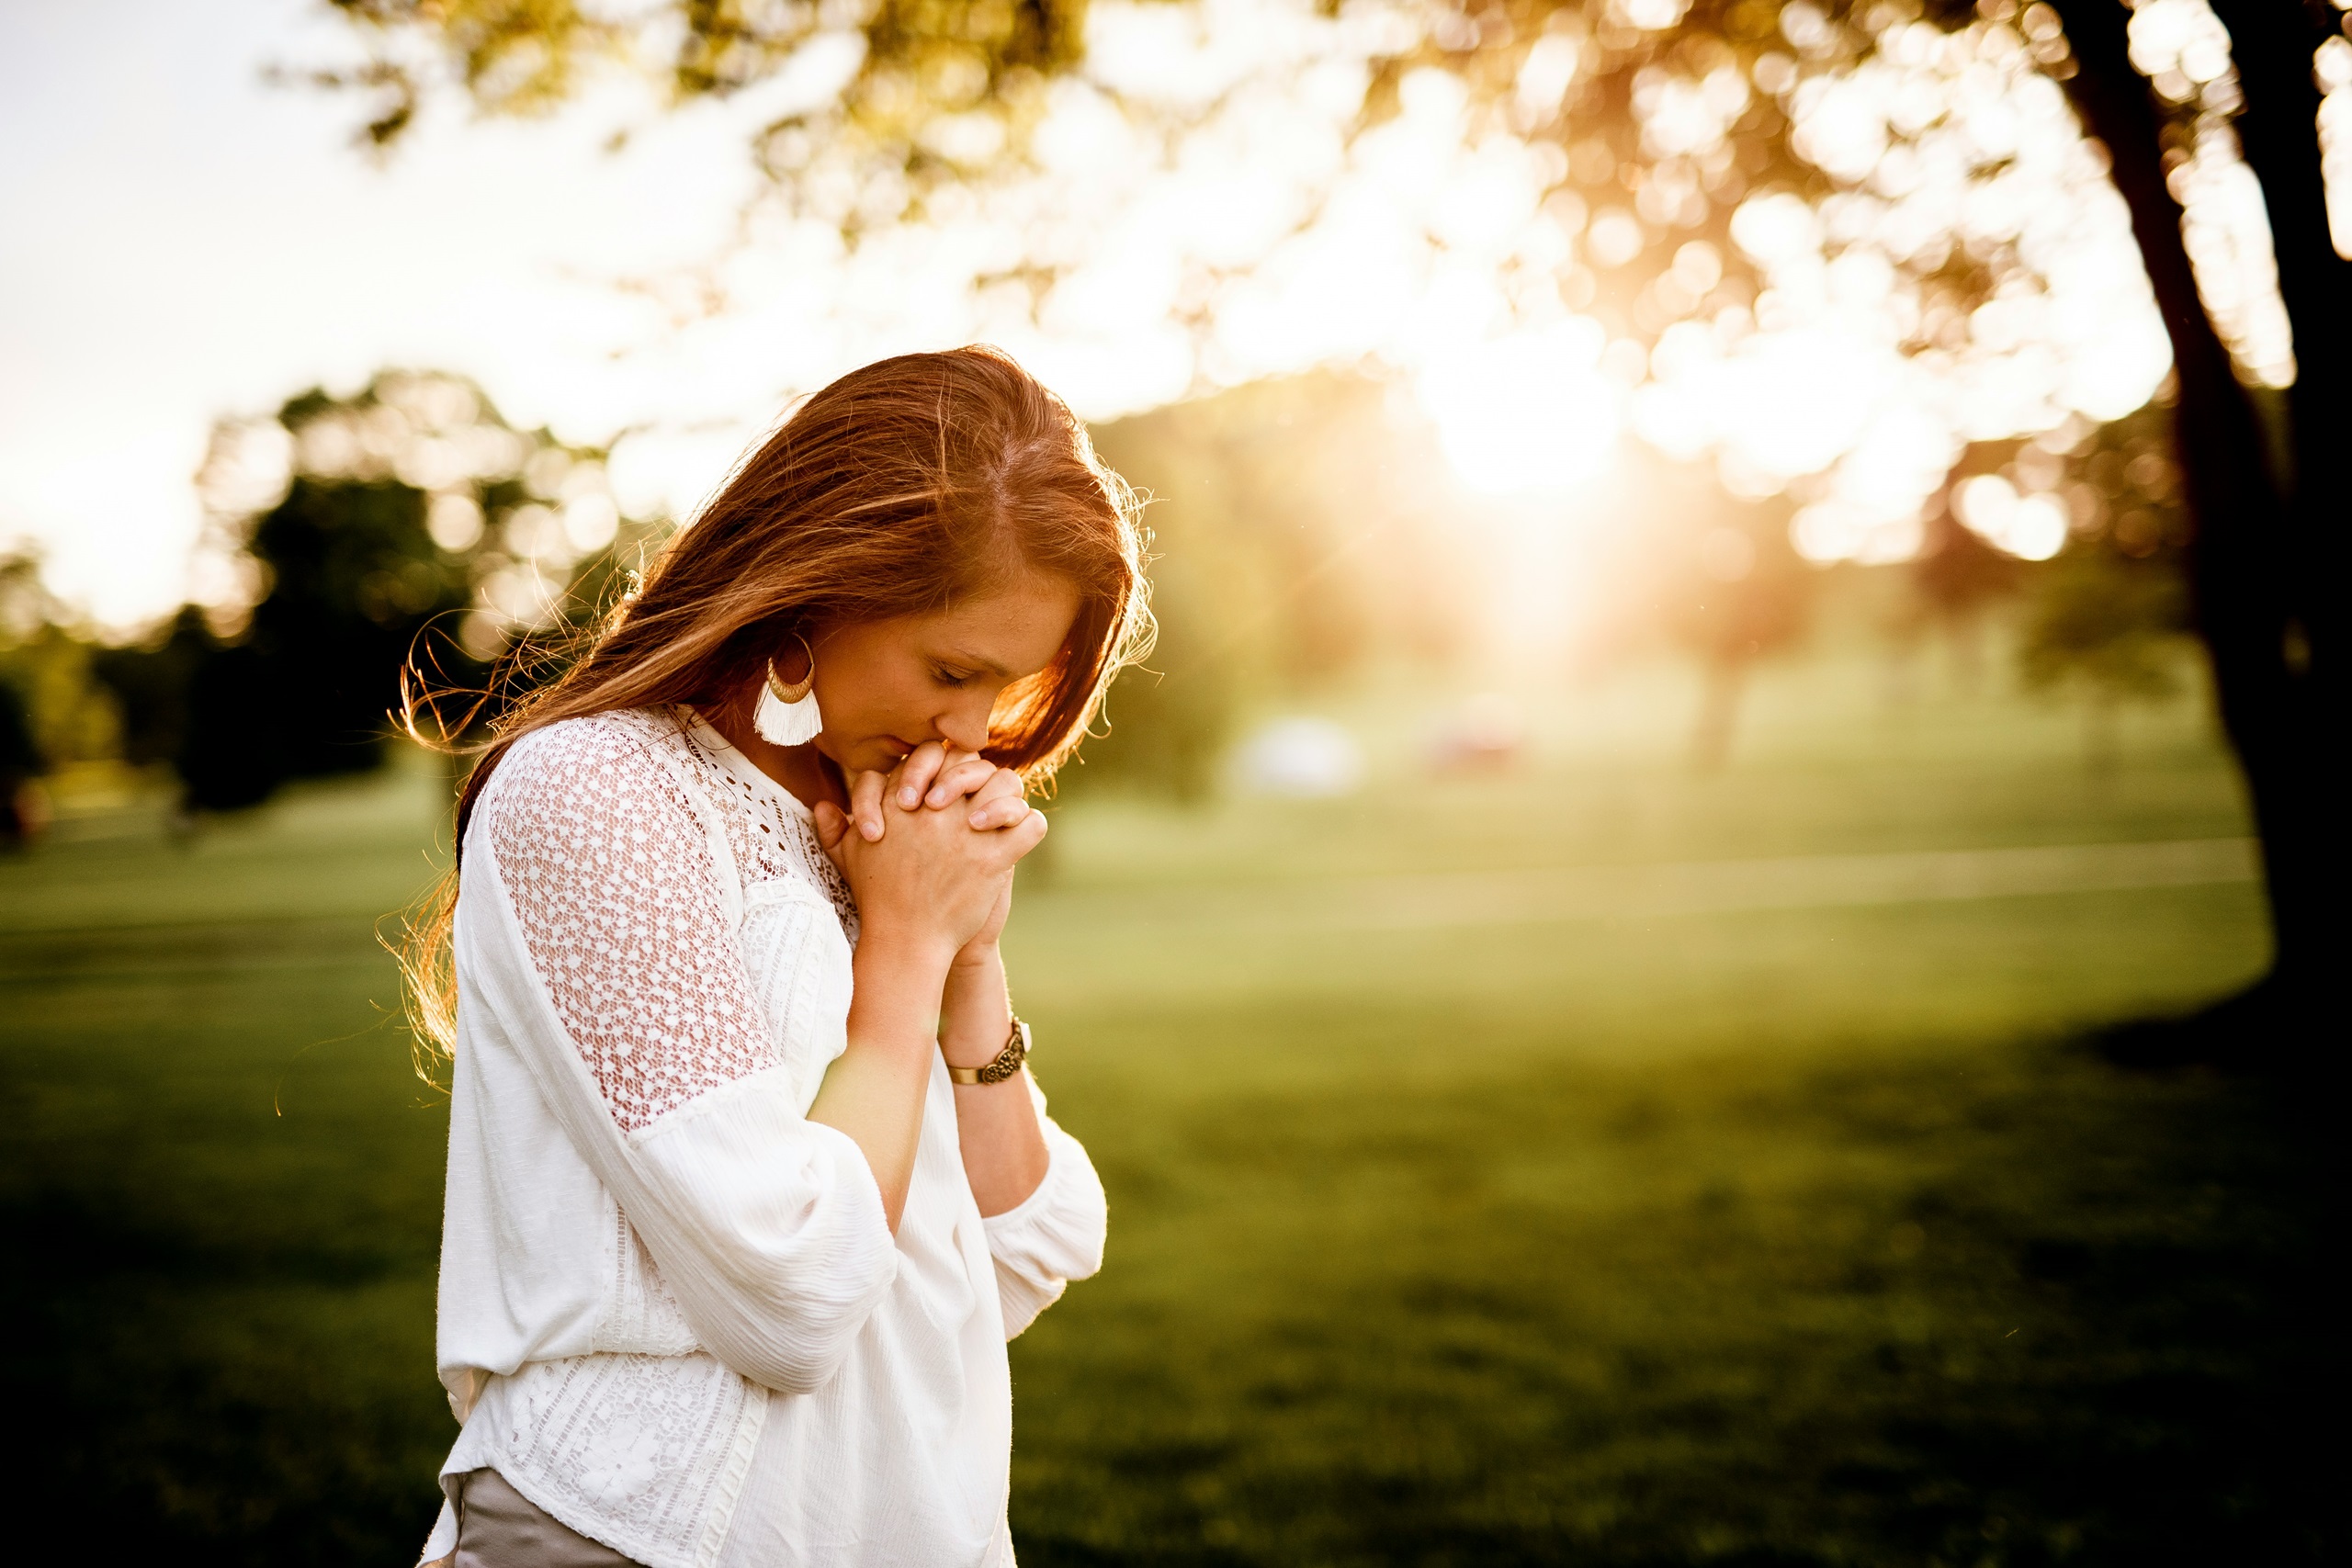 A woman praying outside